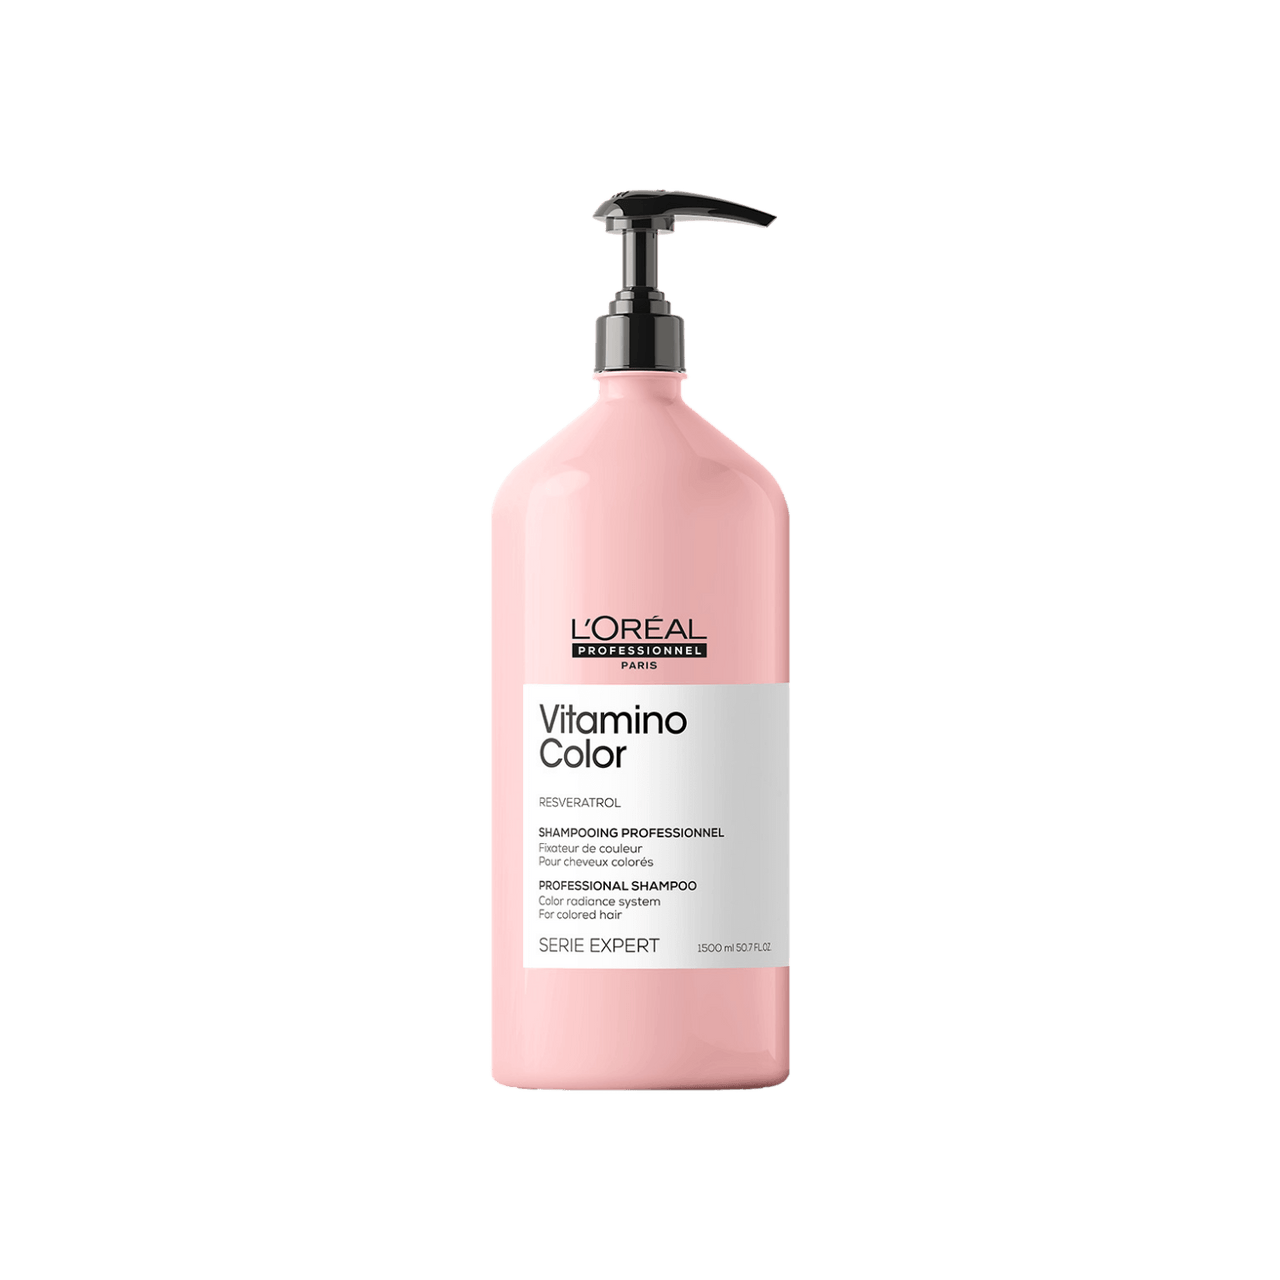 L'Oréal Professionnel Vitamino Color Shampoo 1500mL